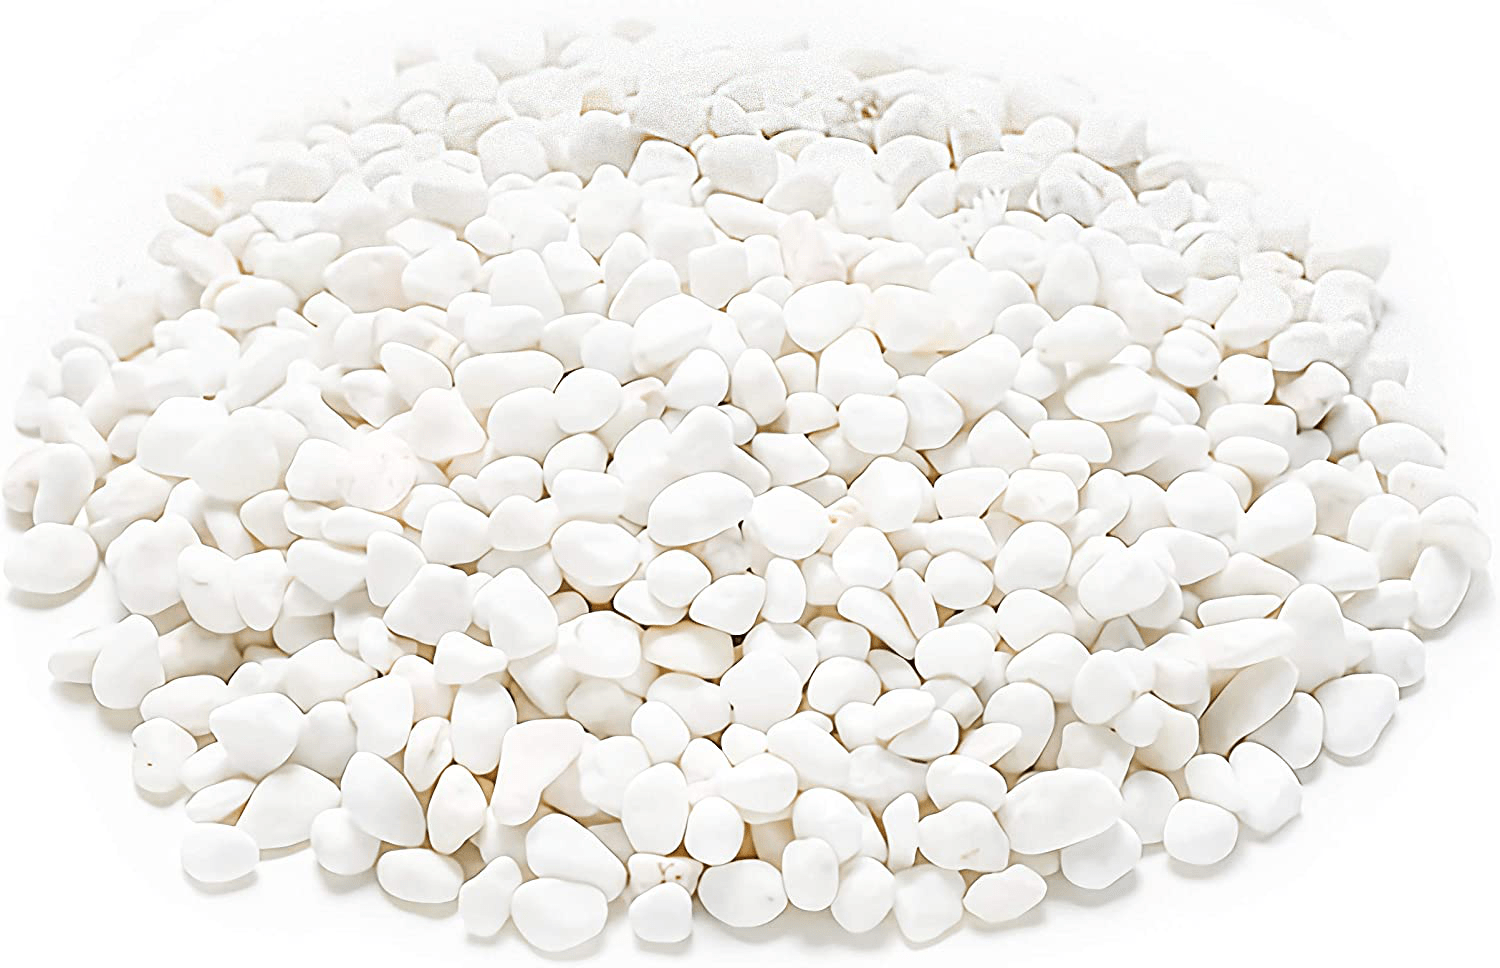 WUWEOT 6-Lb Natural Decorative Bean Pebbles, 0.2" Gravel Rocks for Plants, Succulents, Vases, Aquariums and Terrariums (White)